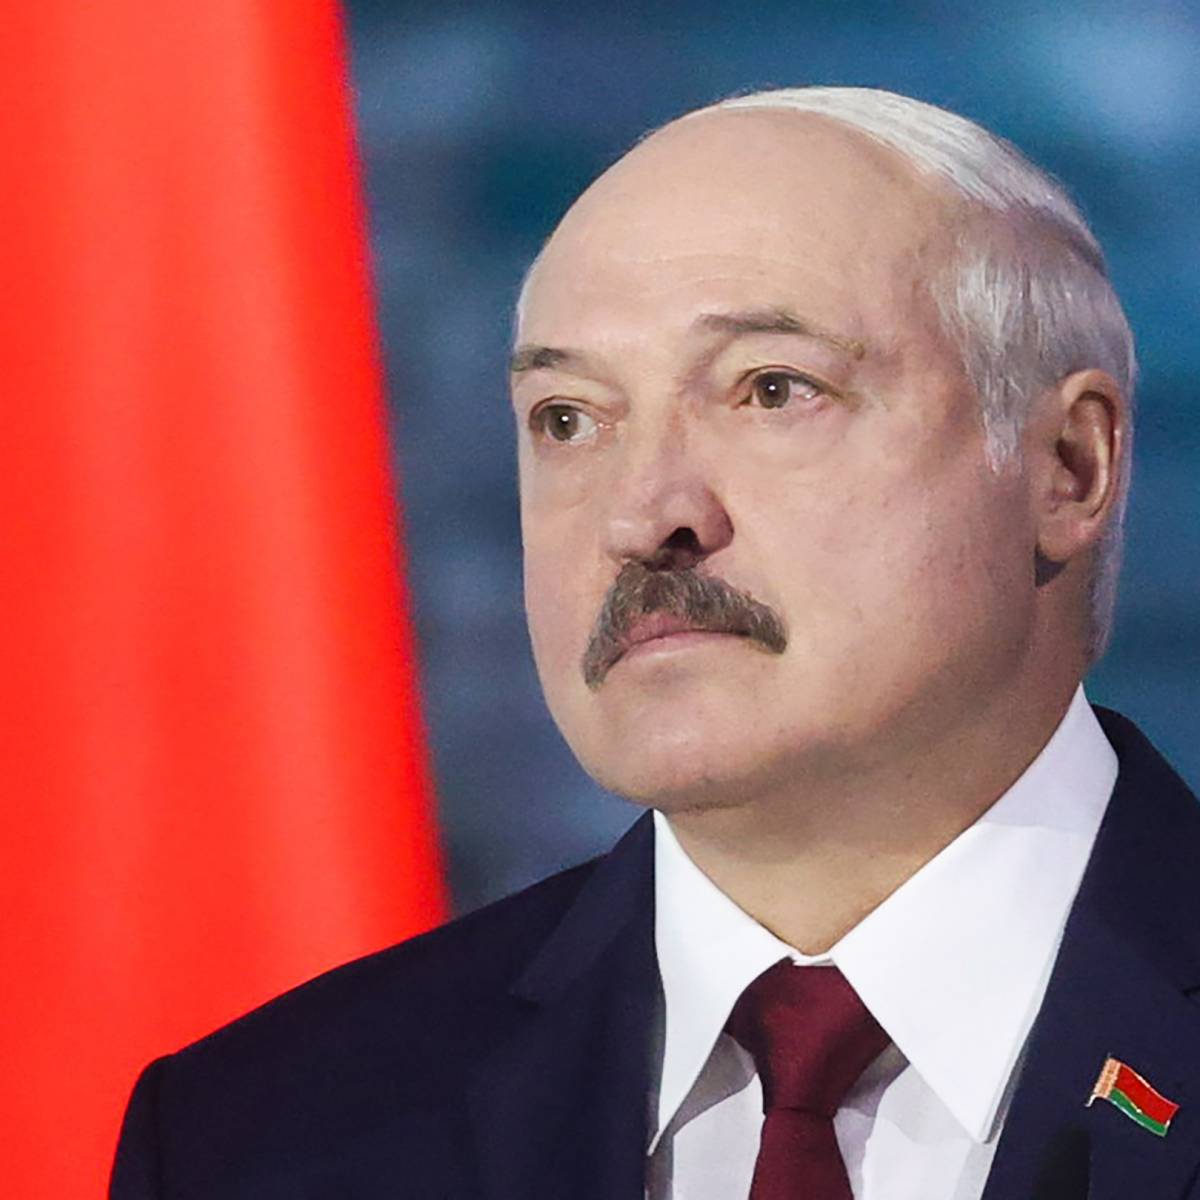 О выборах, о России, о пандемии. Главные тезисы обращения Лукашенко